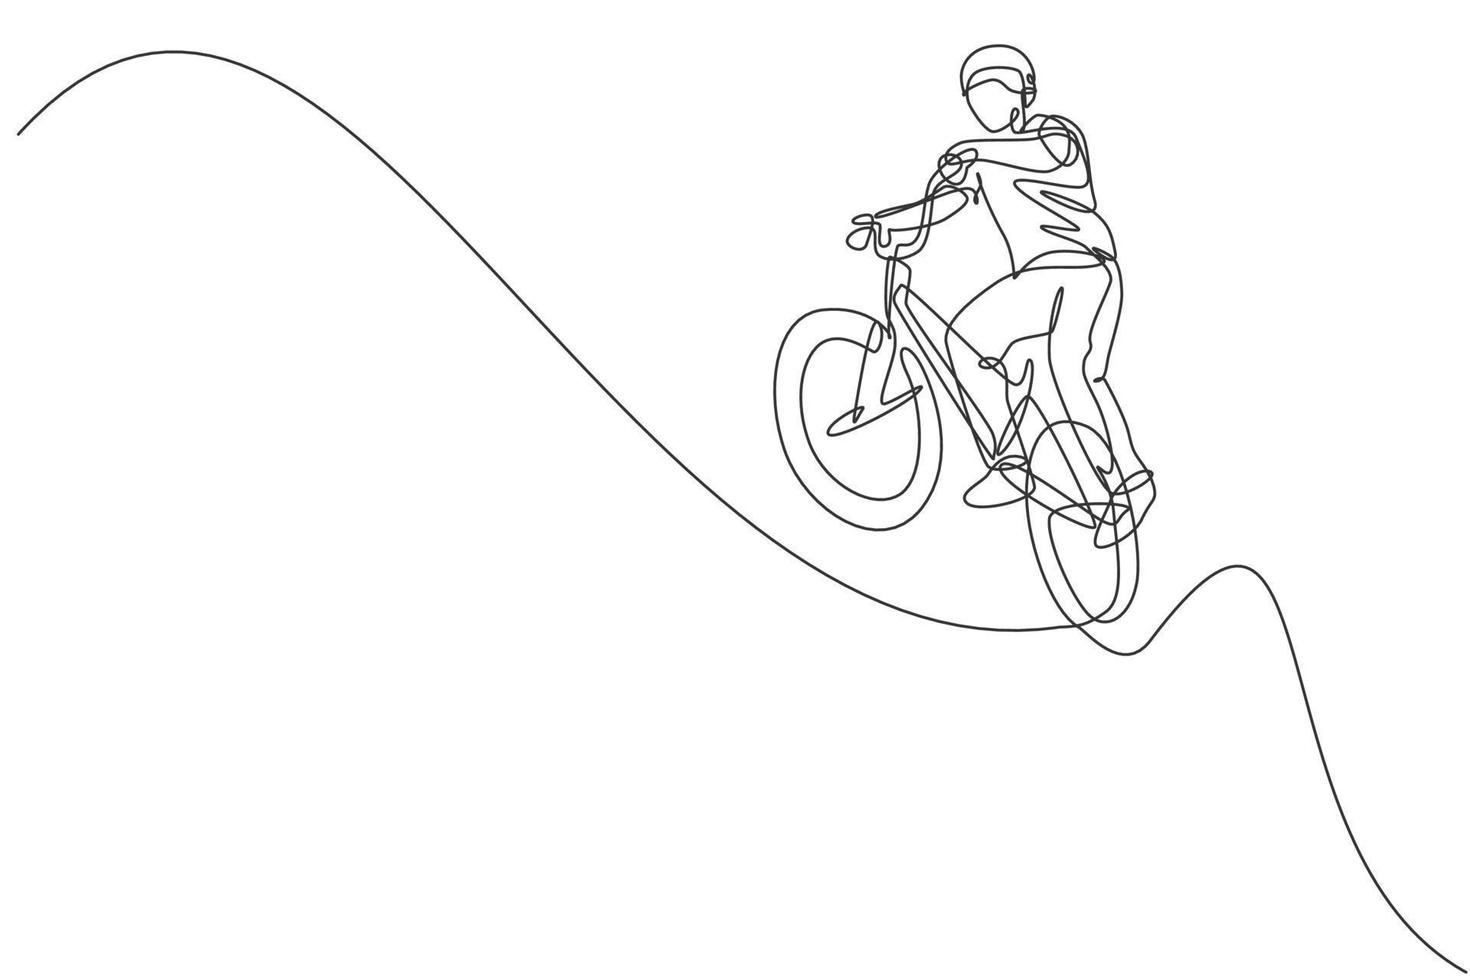 disegno a linea continua singola di un giovane ciclista bmx che vola sul trucco aereo nello skatepark. concetto di stile libero bmx. illustrazione vettoriale alla moda di una linea di disegno per i media di promozione freestyle